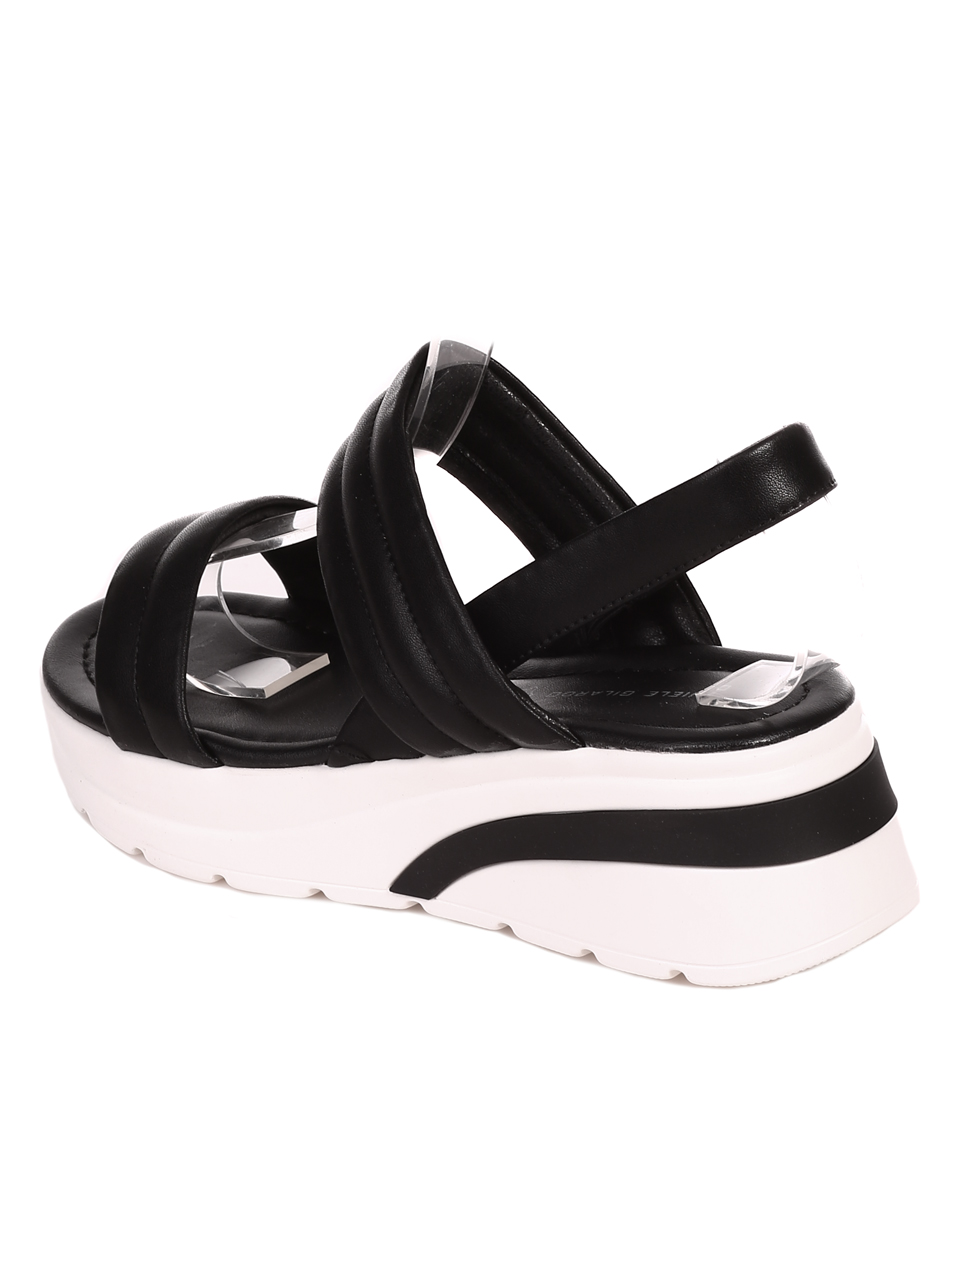 Ежедневни дамски сандали на платформа от естествена кожа 4AF-22186 black